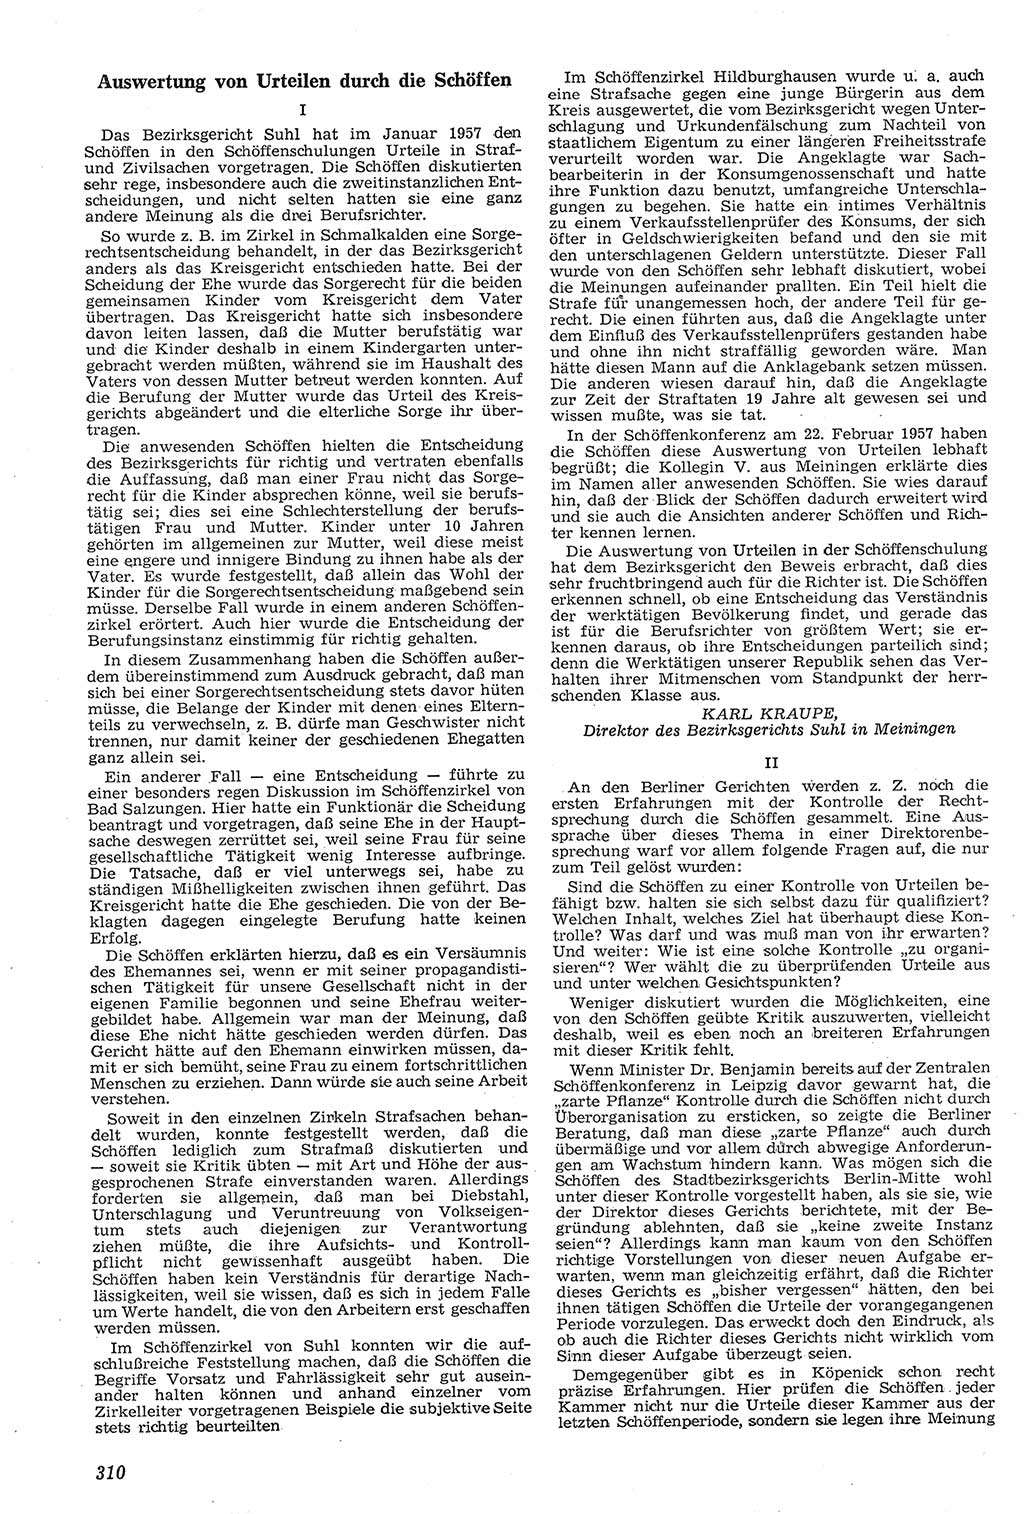 Neue Justiz (NJ), Zeitschrift für Recht und Rechtswissenschaft [Deutsche Demokratische Republik (DDR)], 11. Jahrgang 1957, Seite 310 (NJ DDR 1957, S. 310)